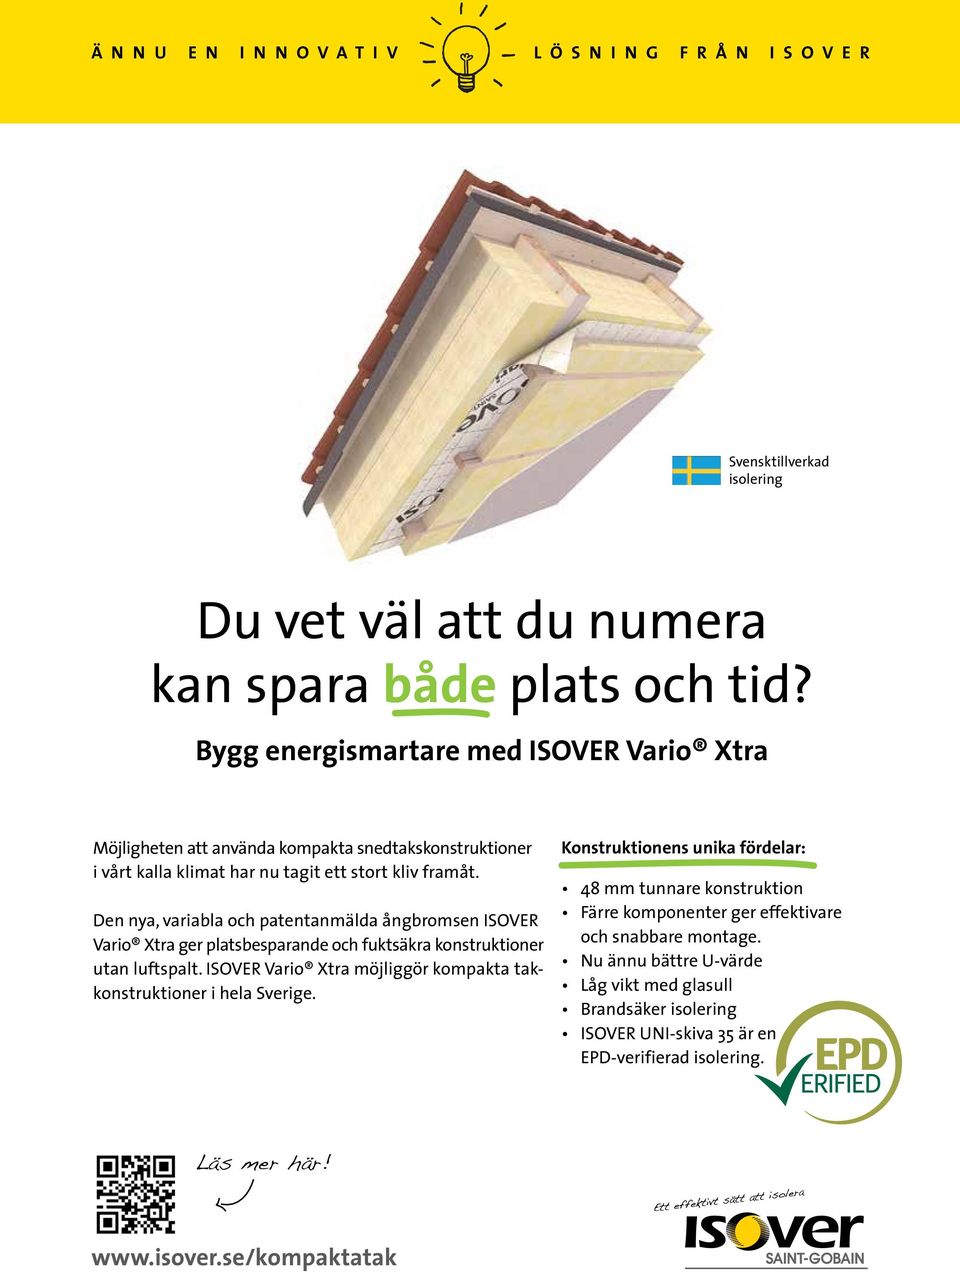 Den nya, variabla och patentanmälda ångbromsen ISOVER Vario Xtra ger platsbesparande och fuktsäkra konstruktioner utan luftspalt.